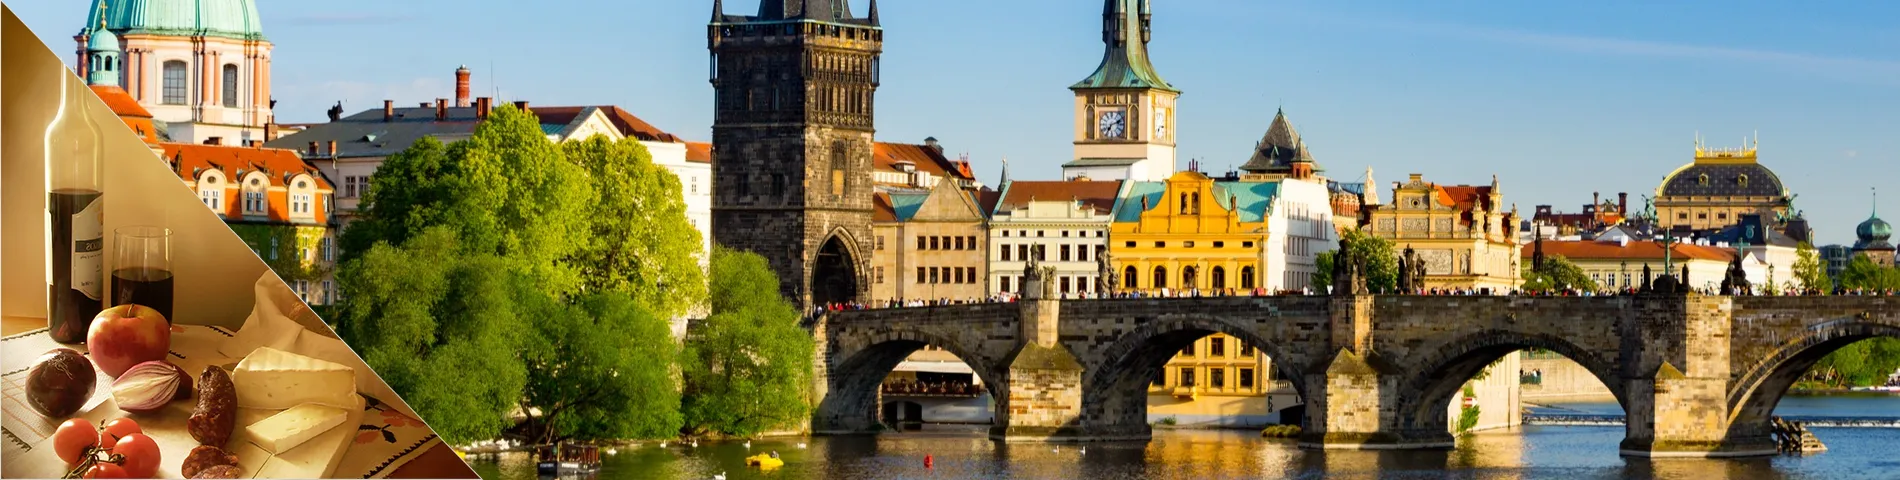 布拉格 - 捷克语和文化课程